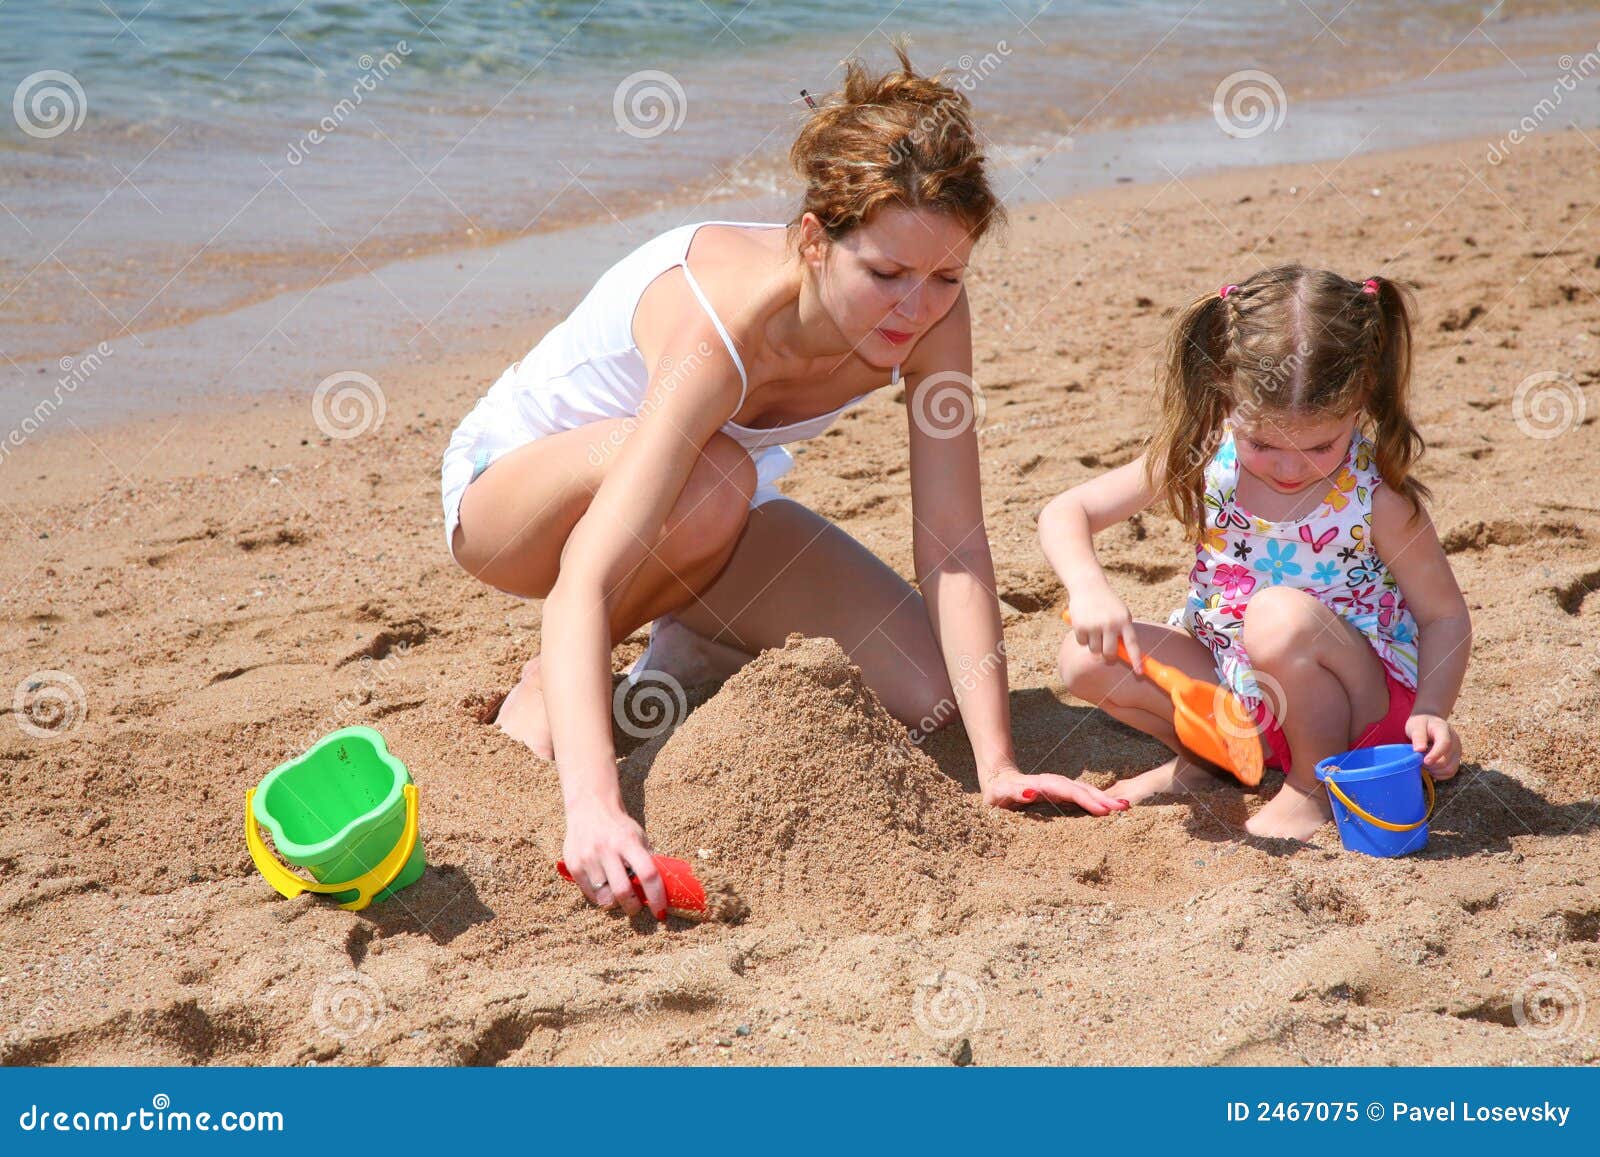 за голыми детьми на пляже фото 17